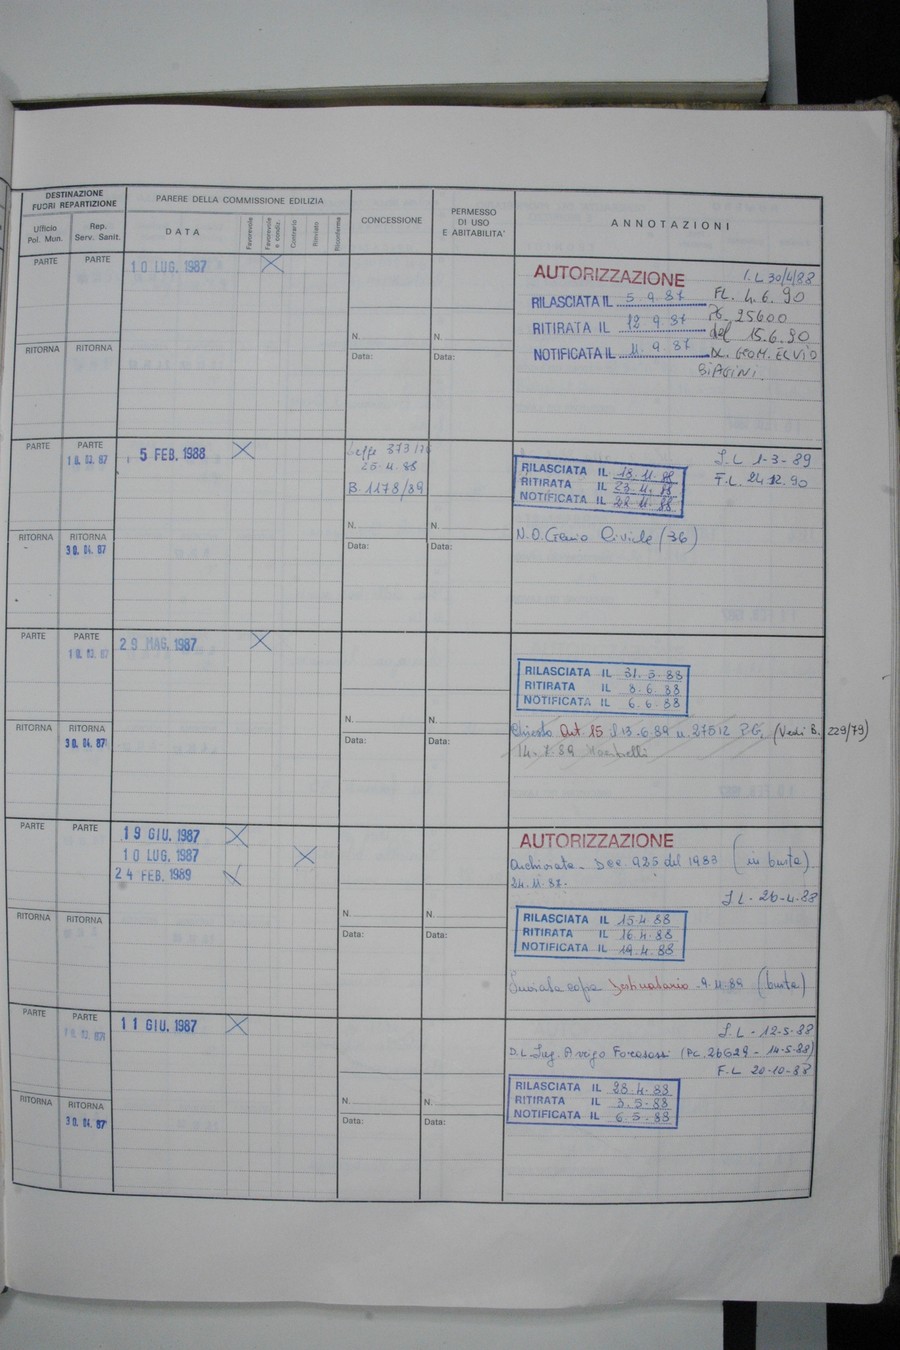 Foto del lato destro del registro con i dati della pratica 160/1987